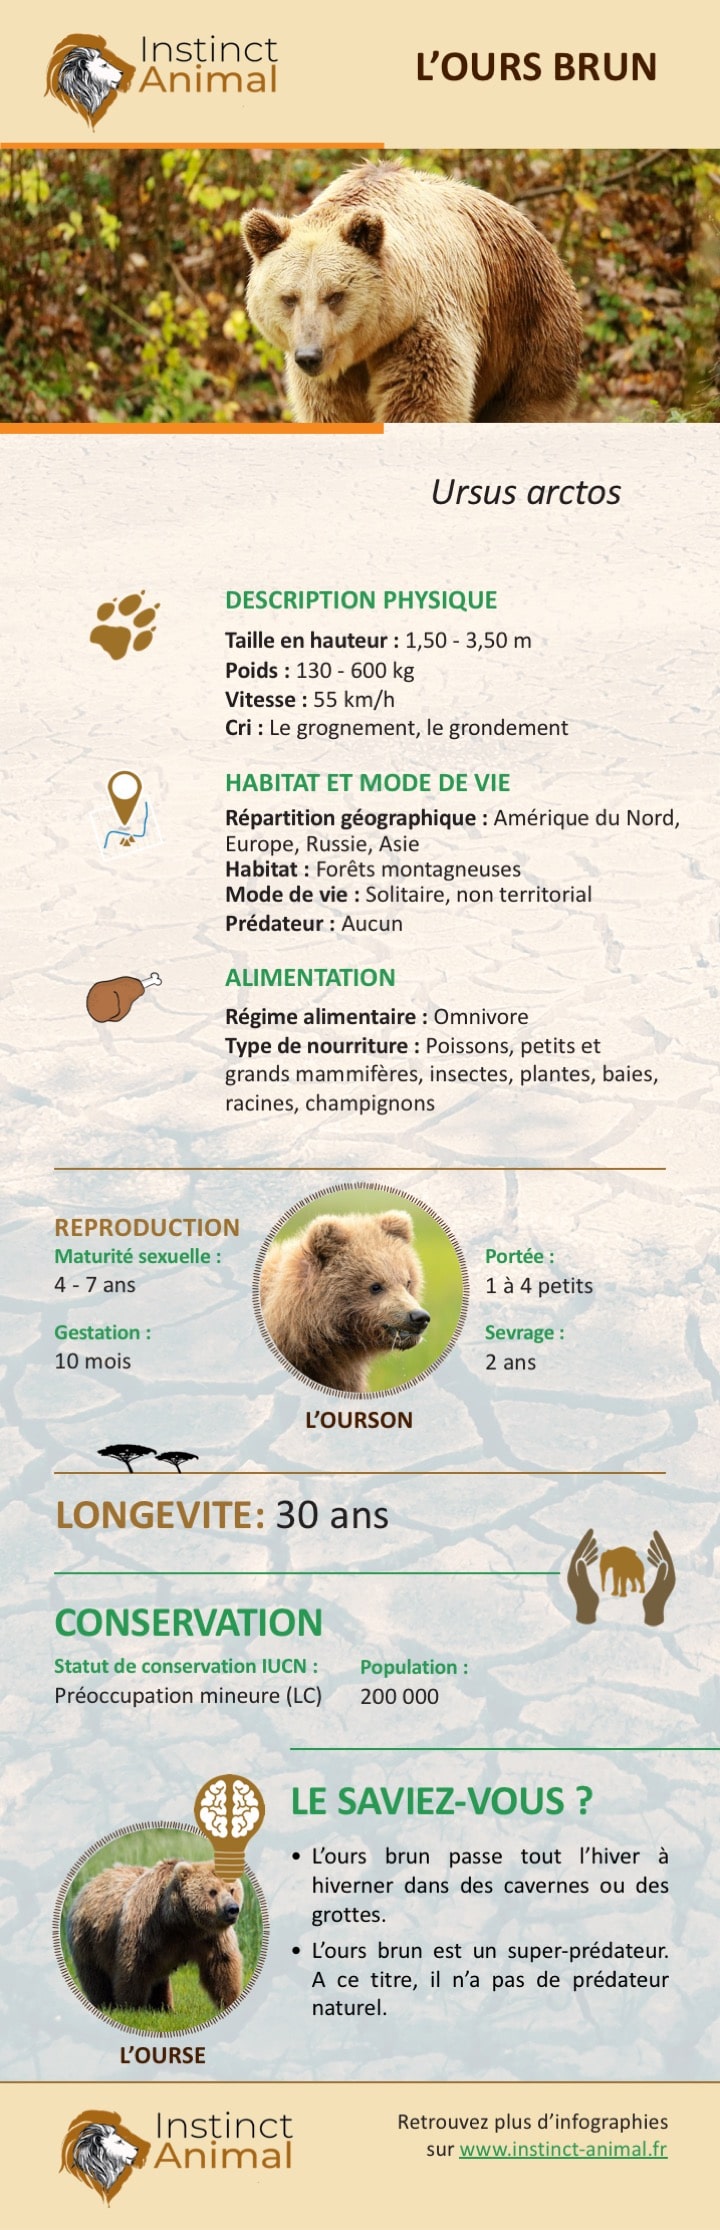 Description de l'ours brun - Infographie - Instinct Animal